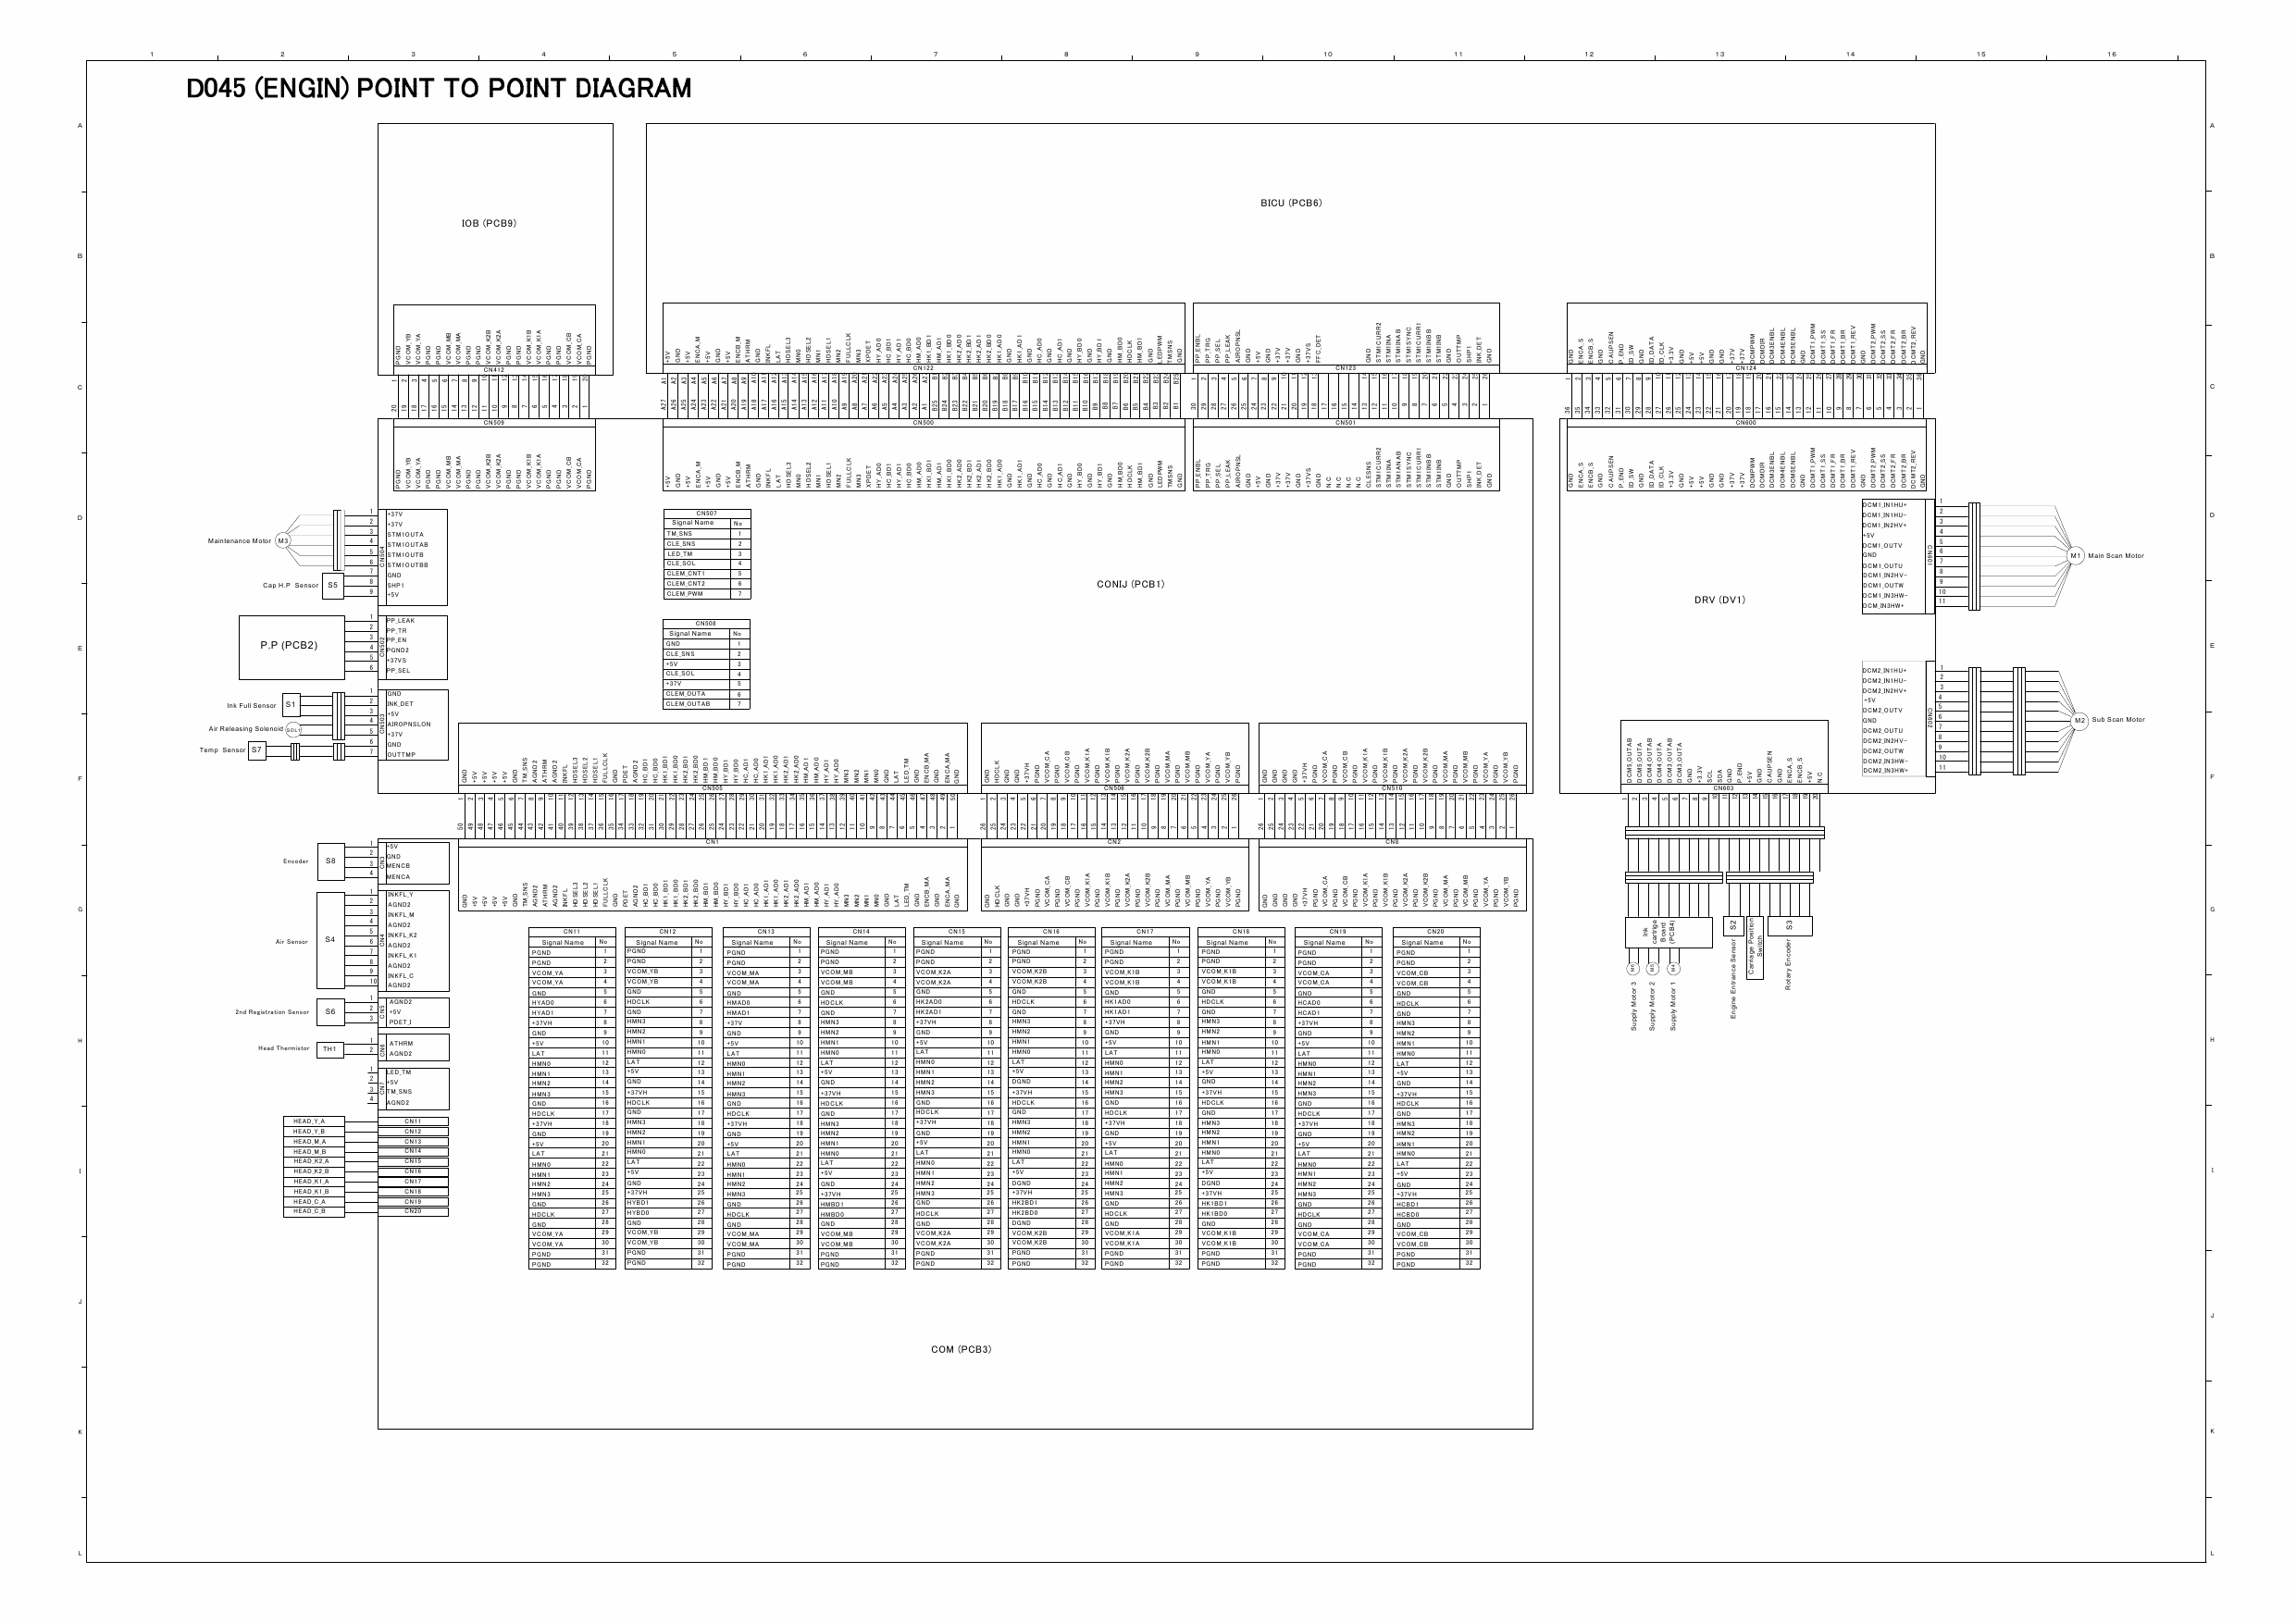 RICOH Aficio MP-C1800 D045 Circuit Diagram-2